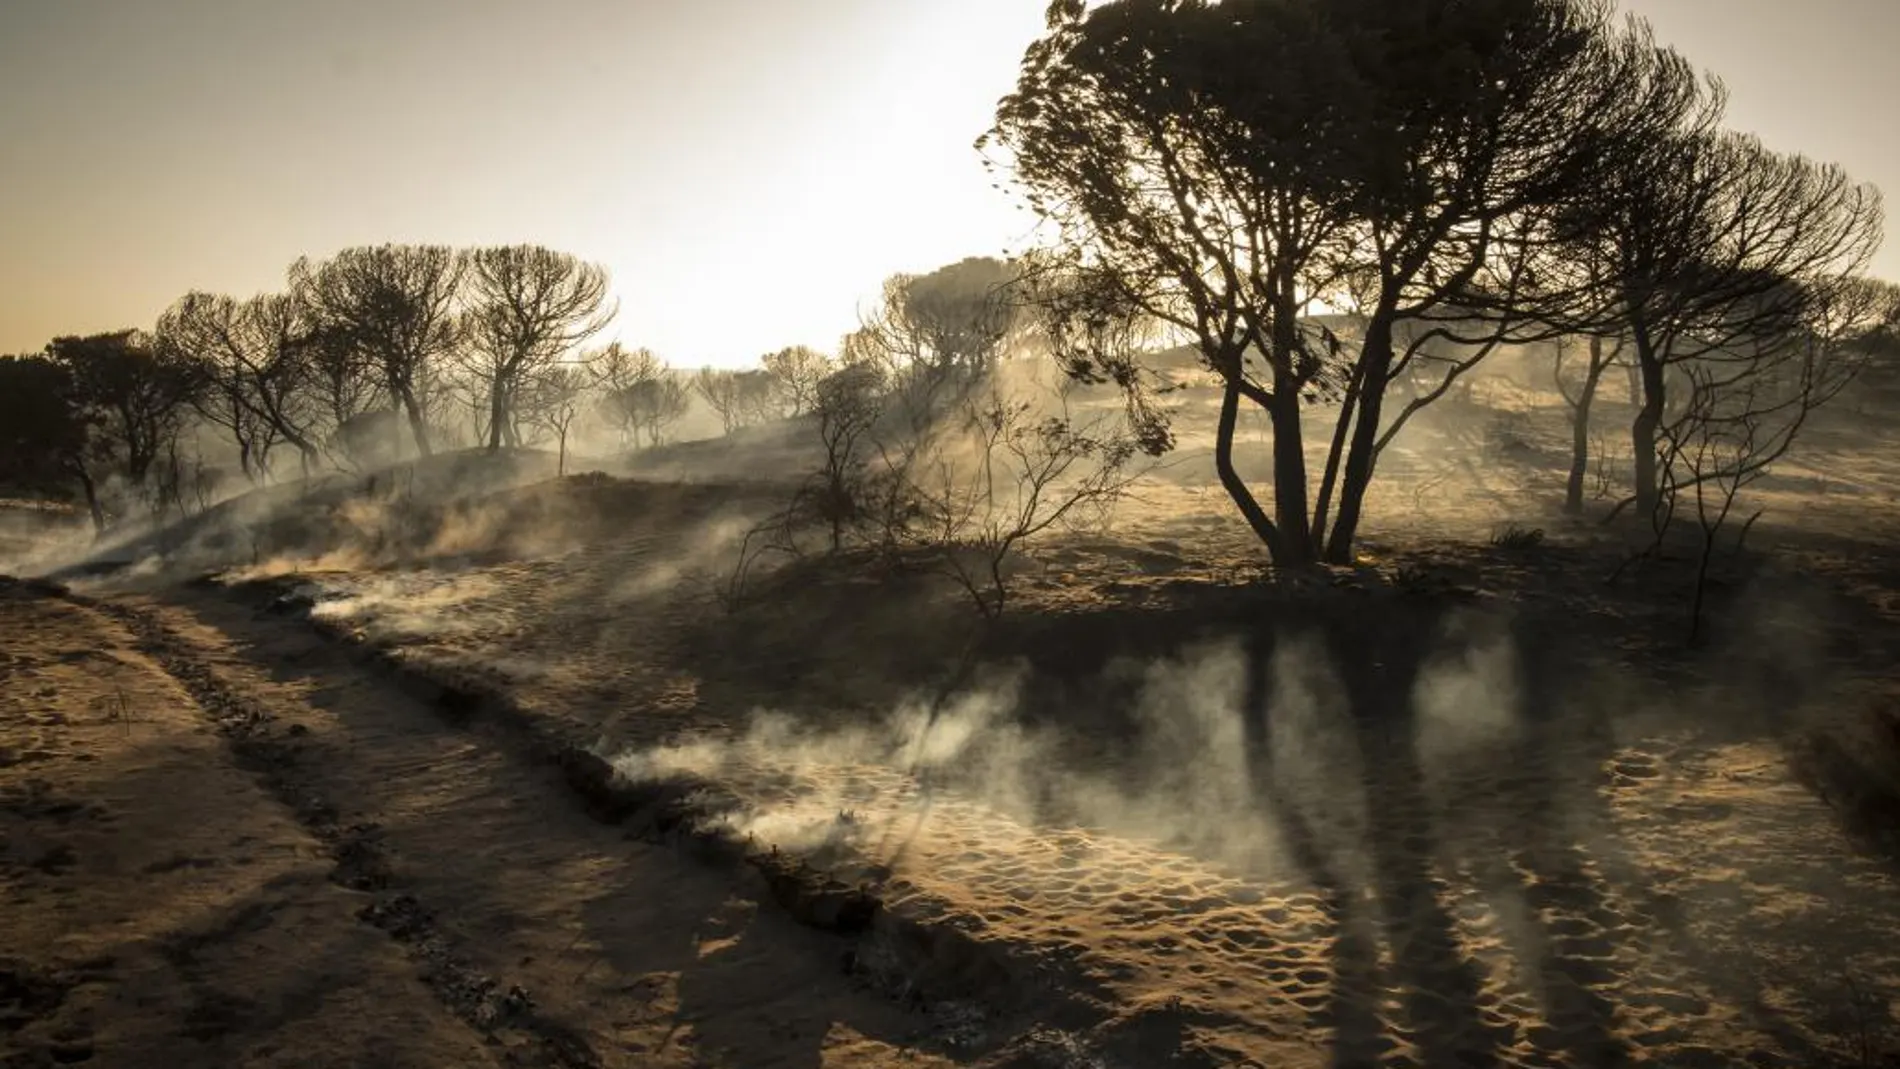 Paraje de Cuesta Maneli tras el incendio que afectó al entorno del Espacio Natural de Doñana